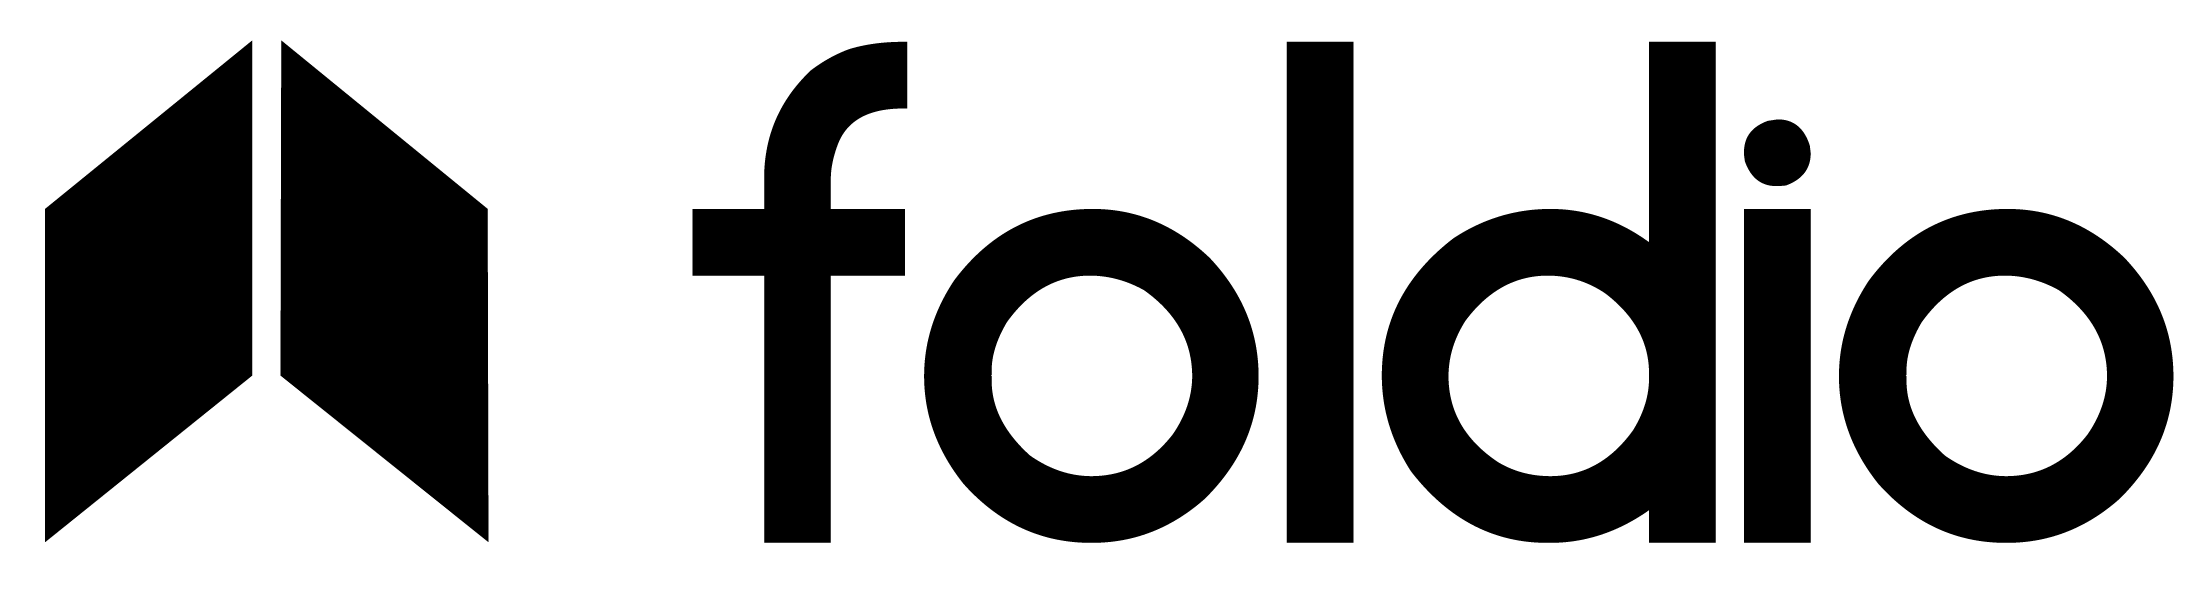 Foldio | Ürün Çekim Çadırı – Smart Turntable 360 Derece Ürün Çekimi – Ürün Fotoğraf Çekme Çadırı – Ürün Fotoğraf Çekimi.